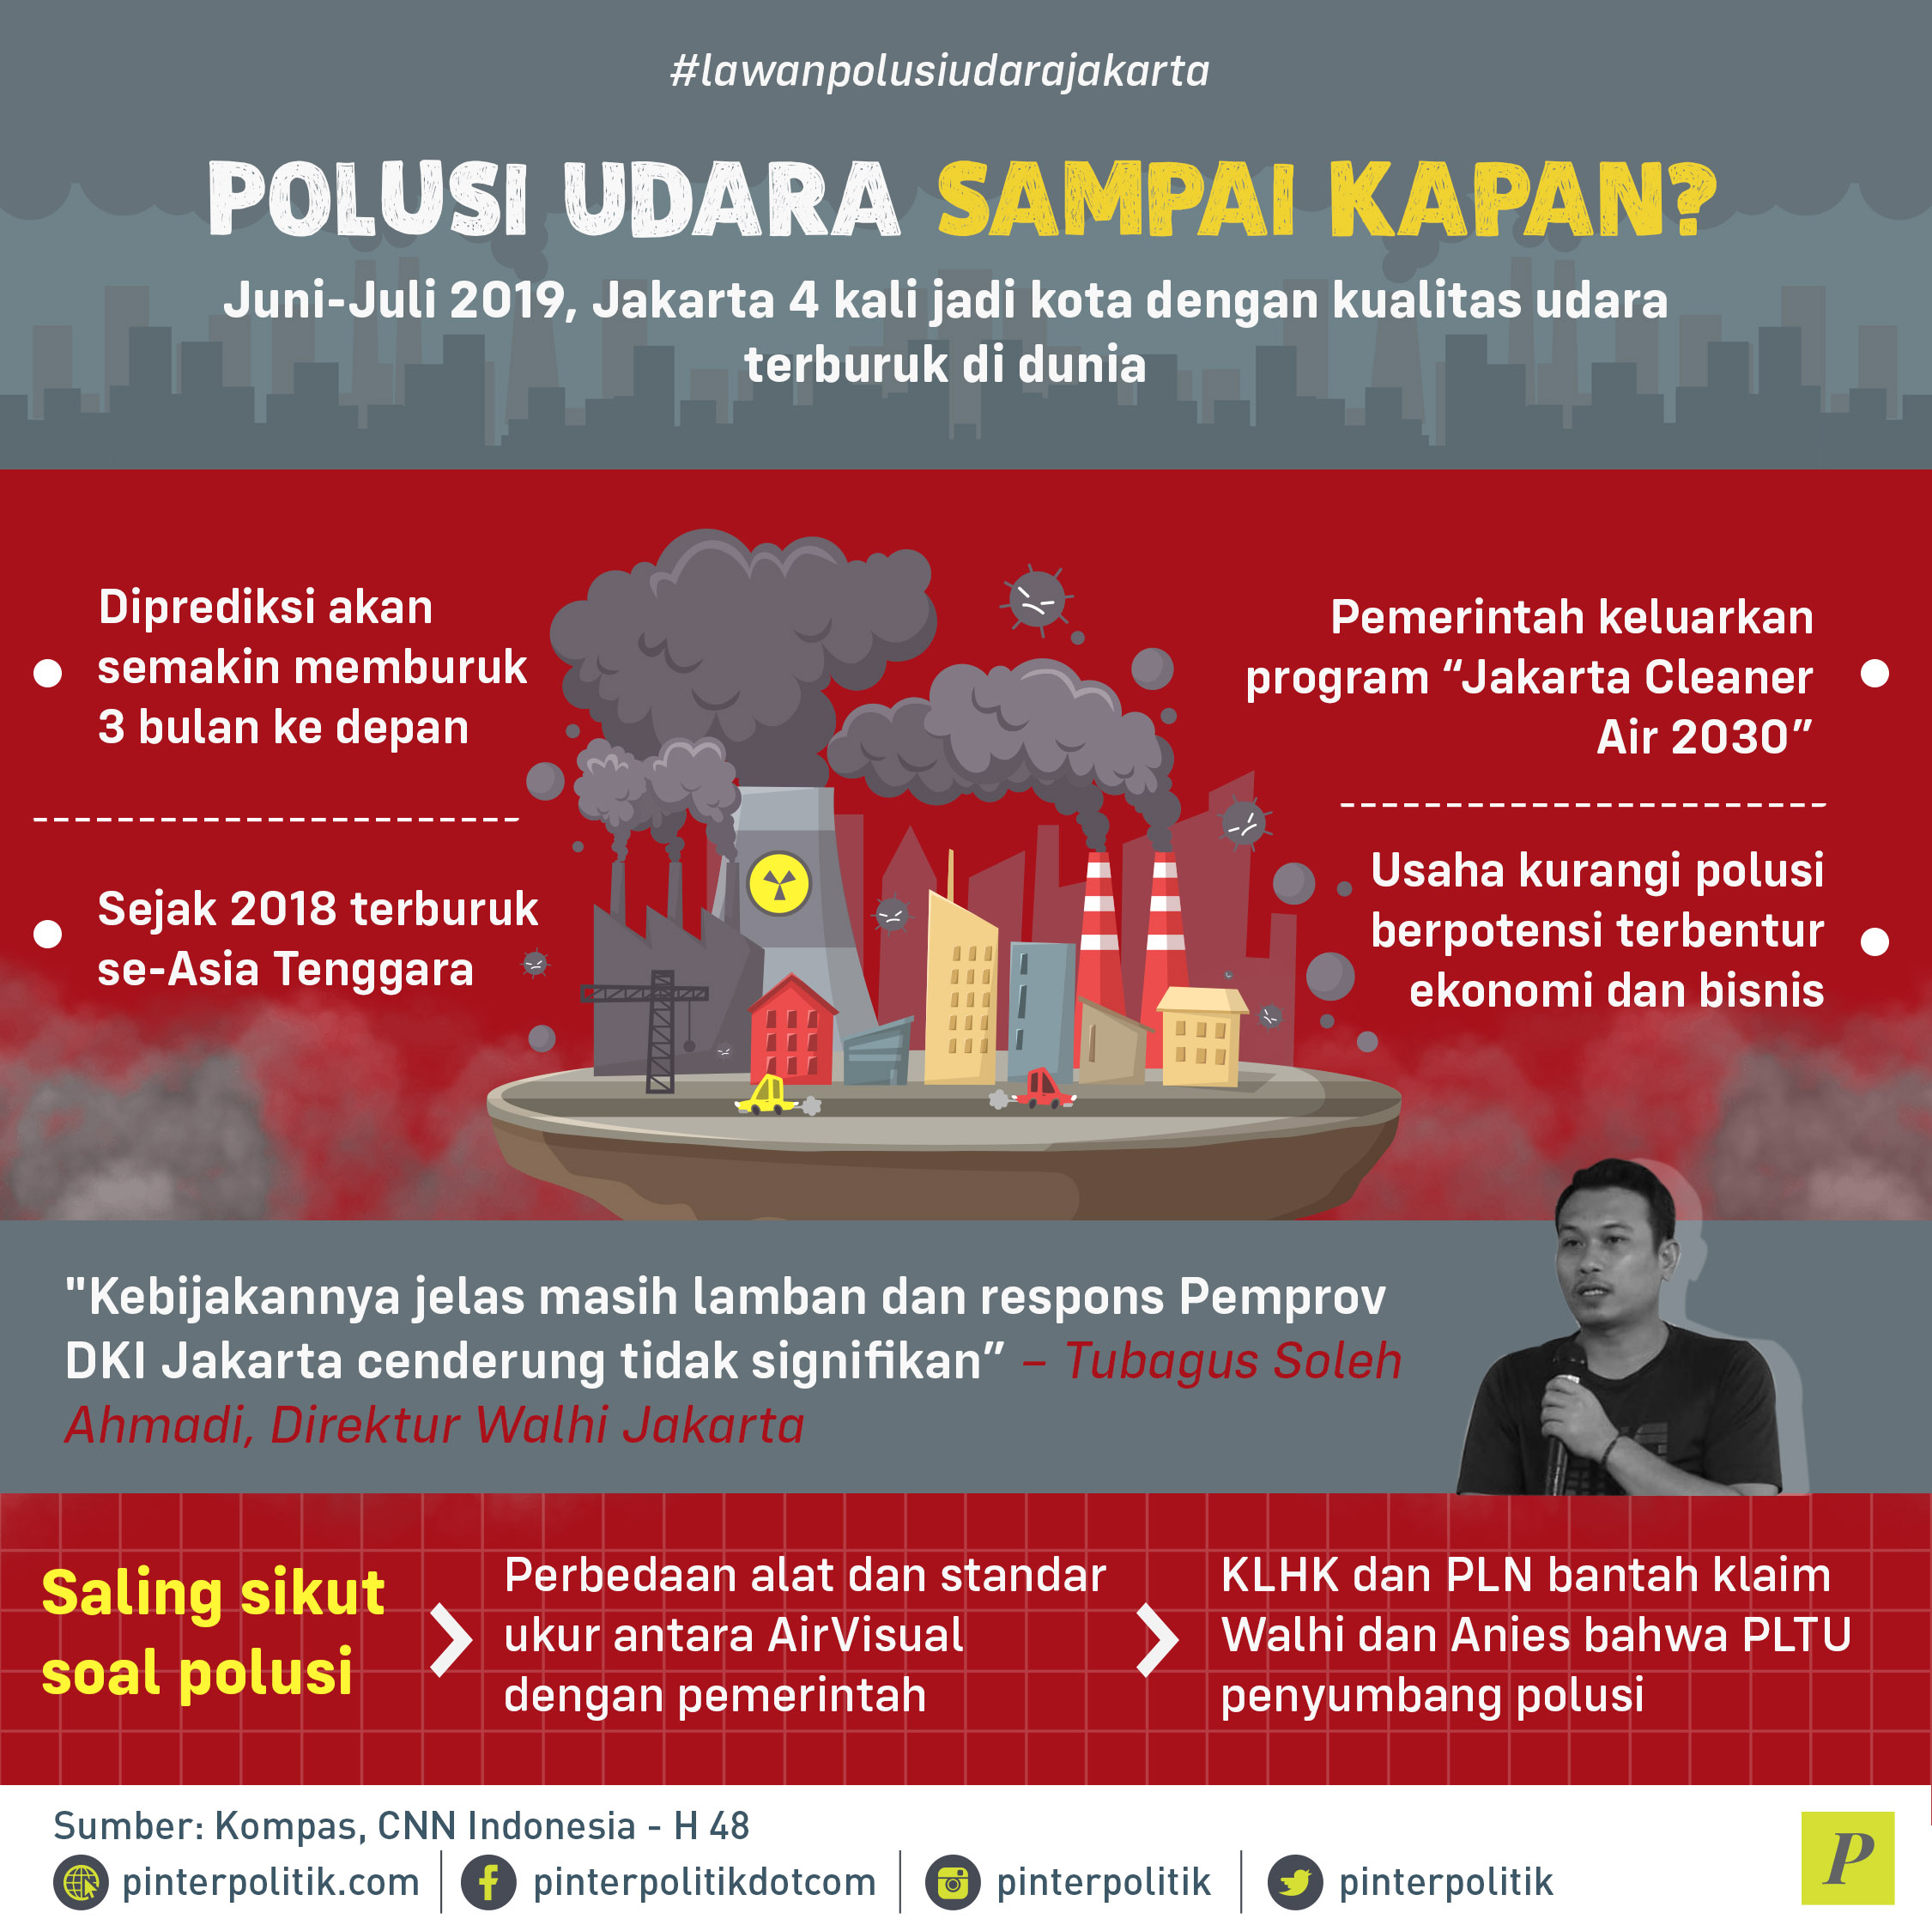 Jakarta jadi kota dengan kualitas udara terburuk di dunia